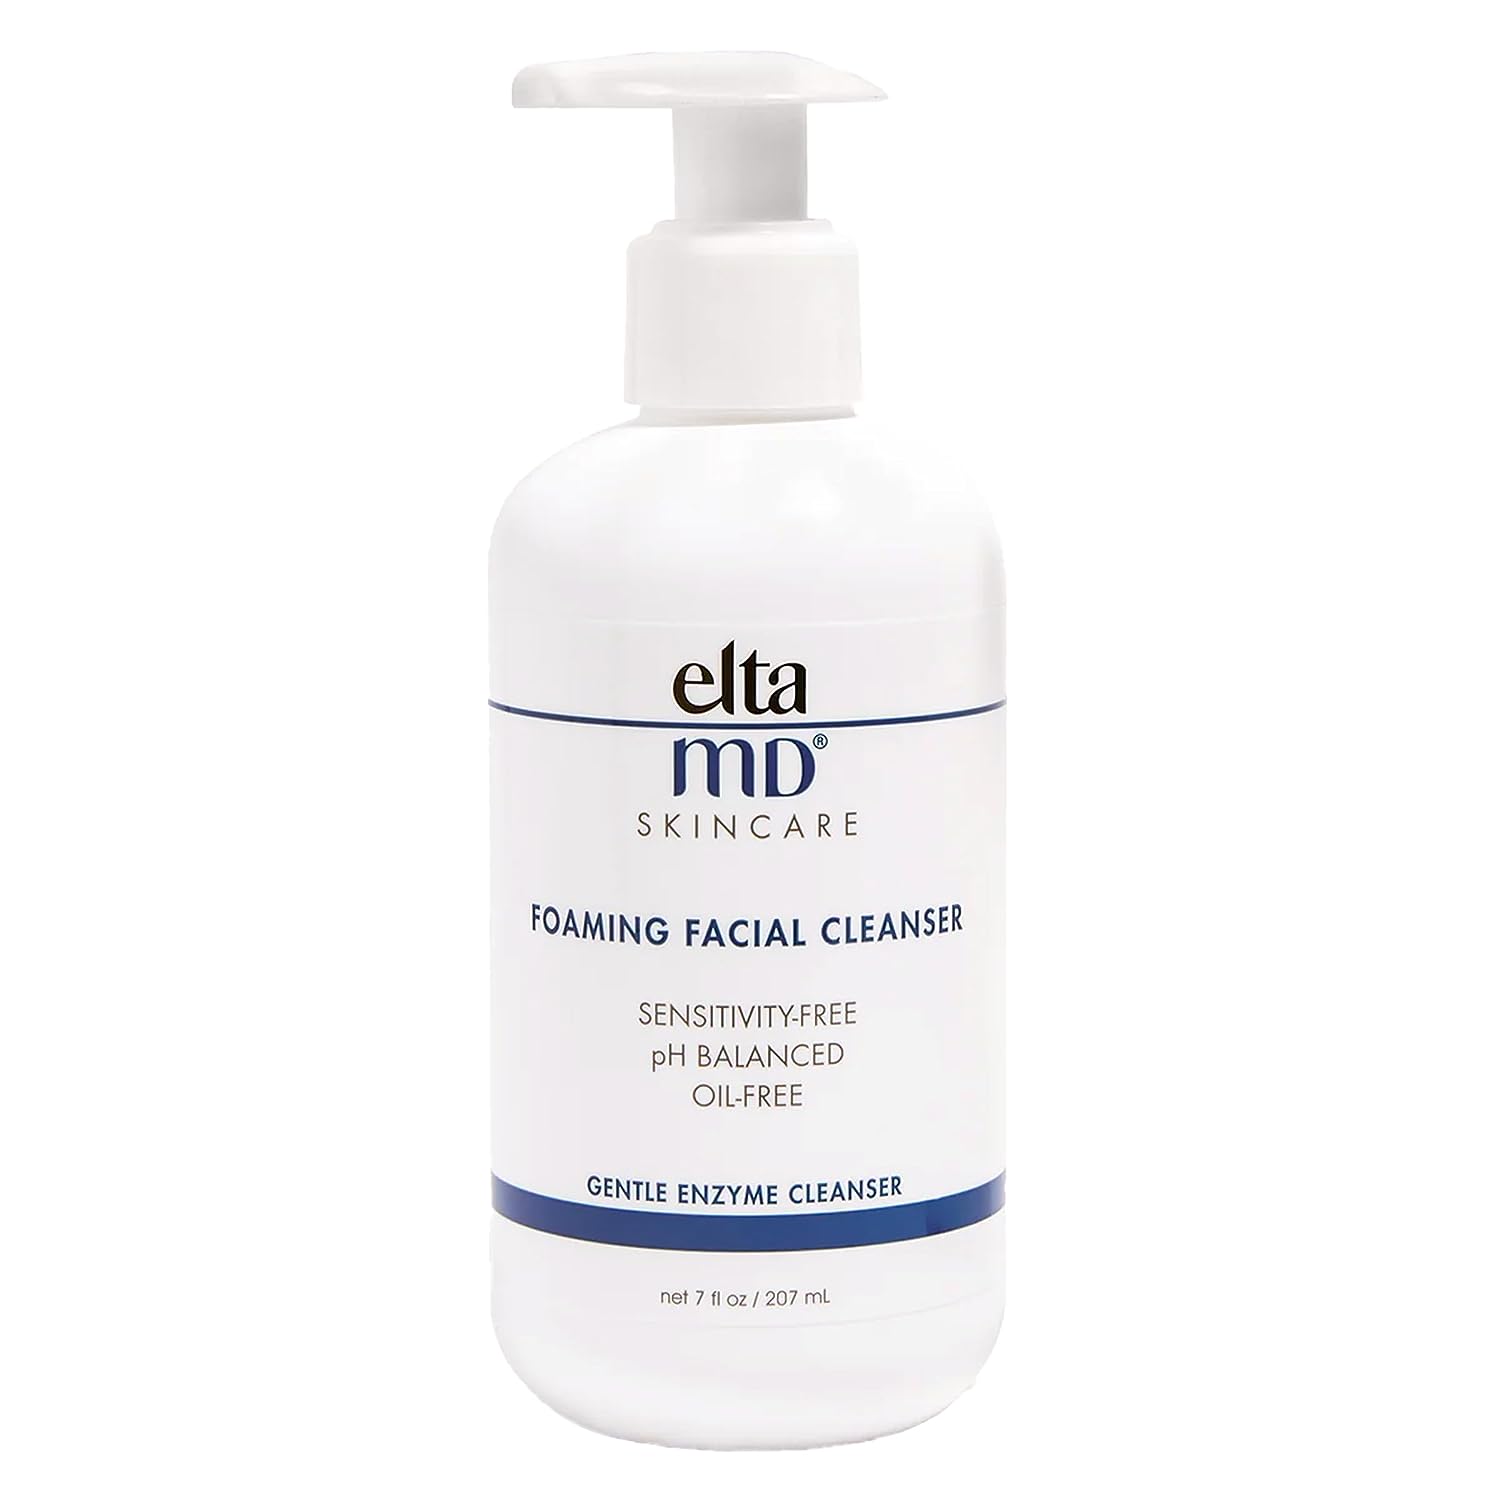 EltaMD Foaming Facial Cleanser, best pregnancy safe face wash